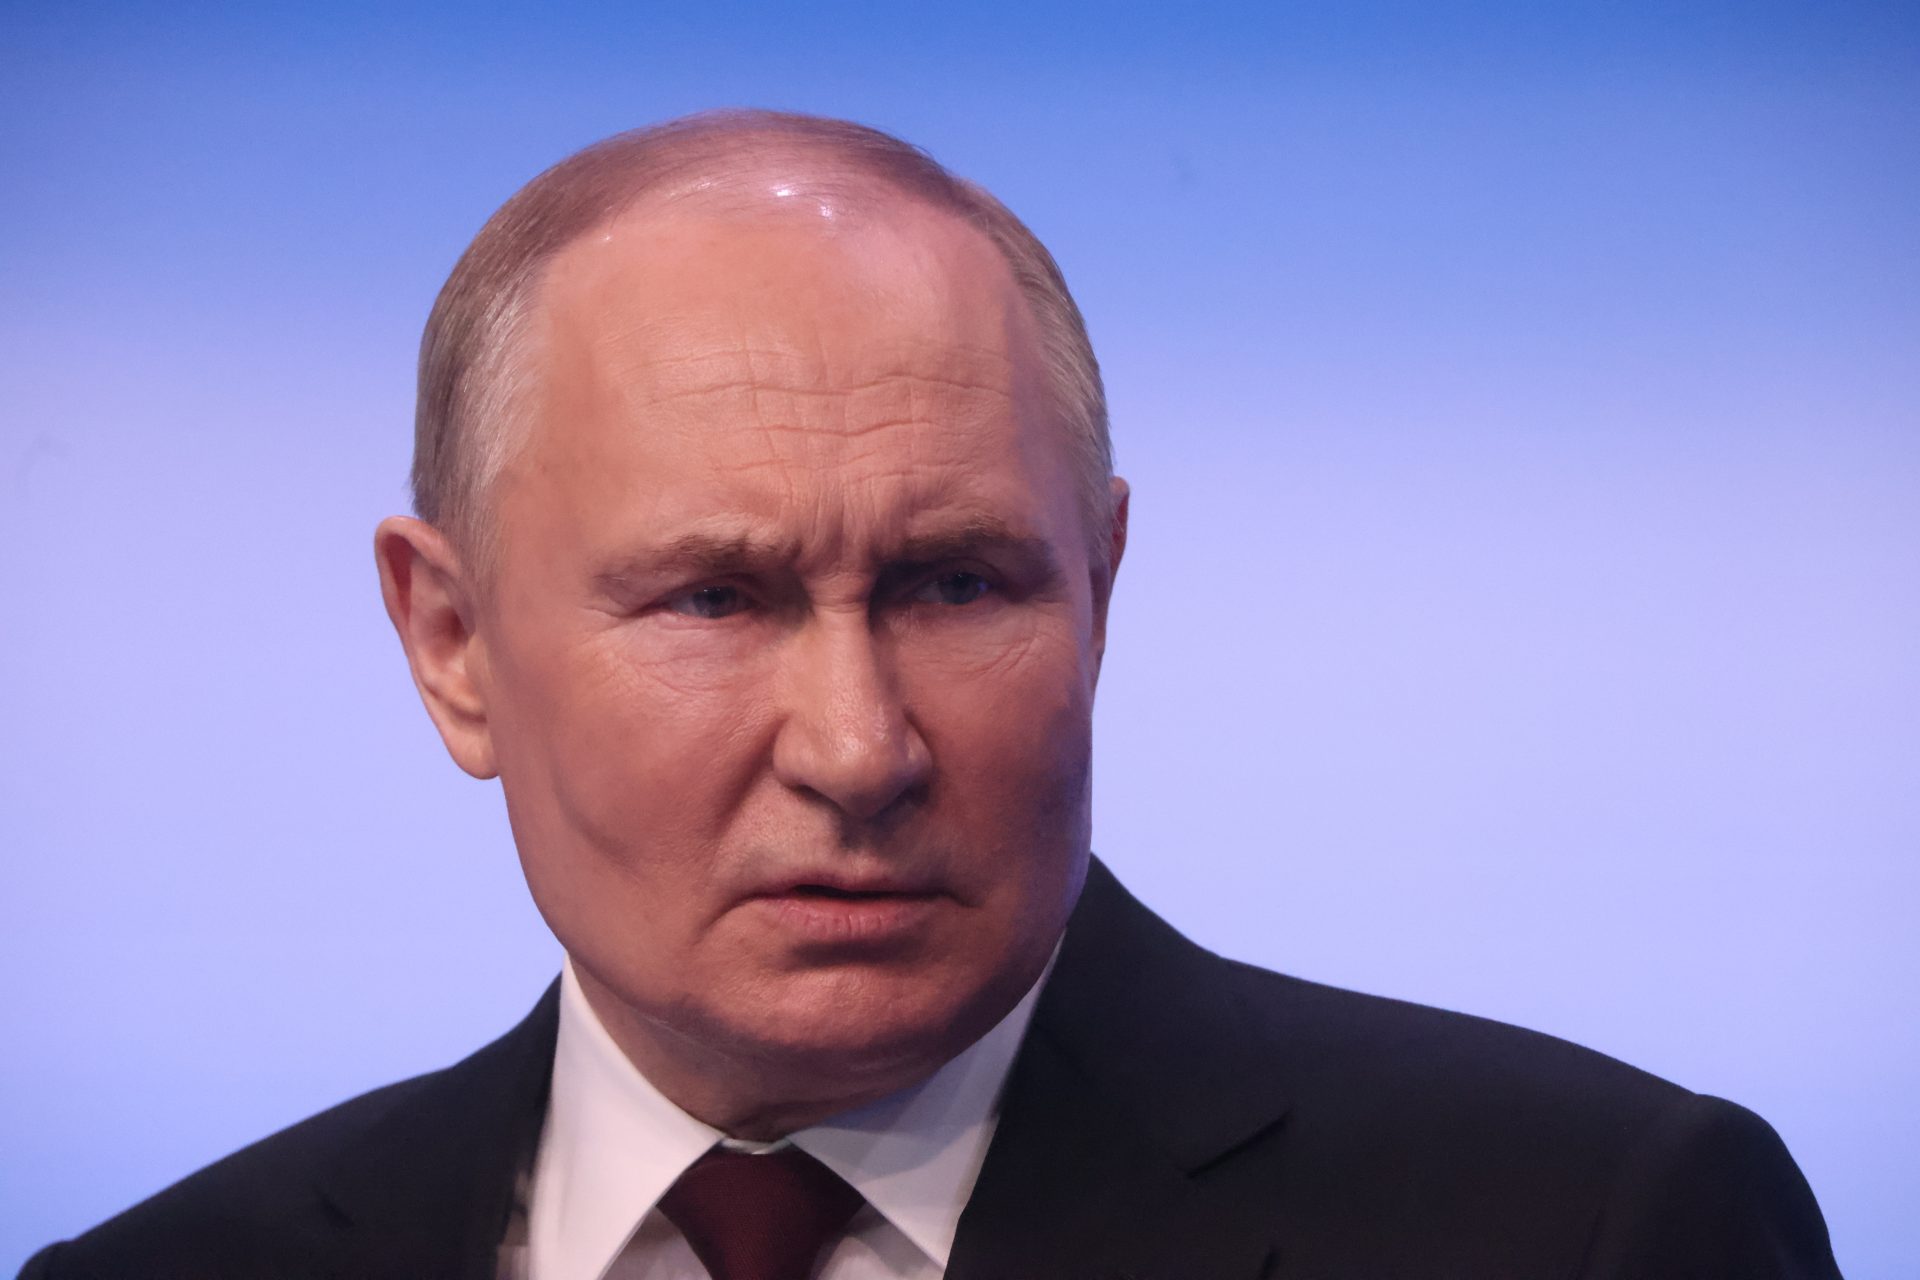 Paranoïde Poetin: Ruslands leider gaat tot het uiterste om veilig te blijven